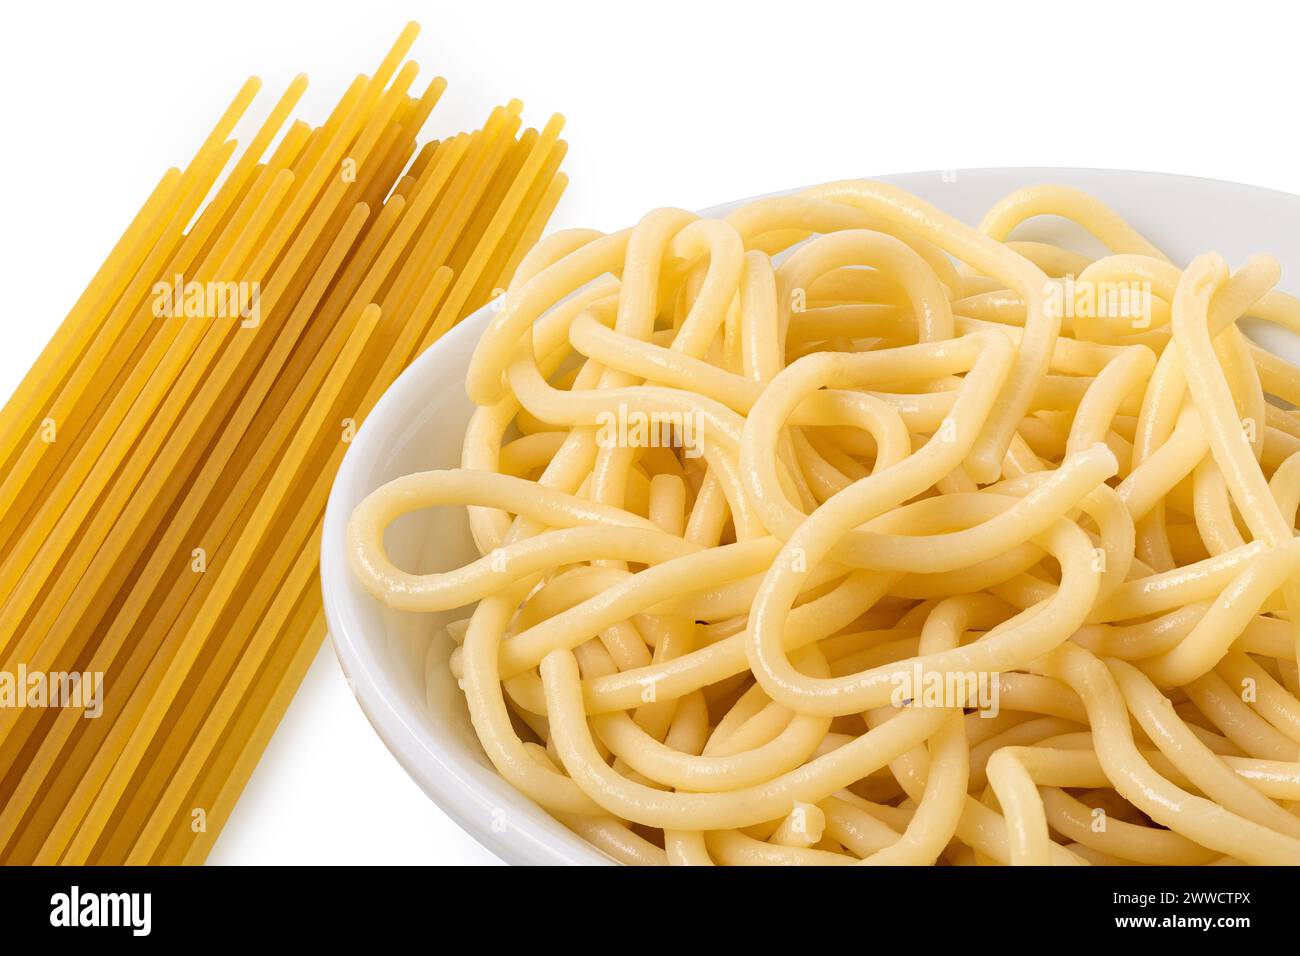 Dettagli degli spaghetti cotti in una ciotola di ceramica bianca accanto agli spaghetti crudi su bianco. Foto Stock